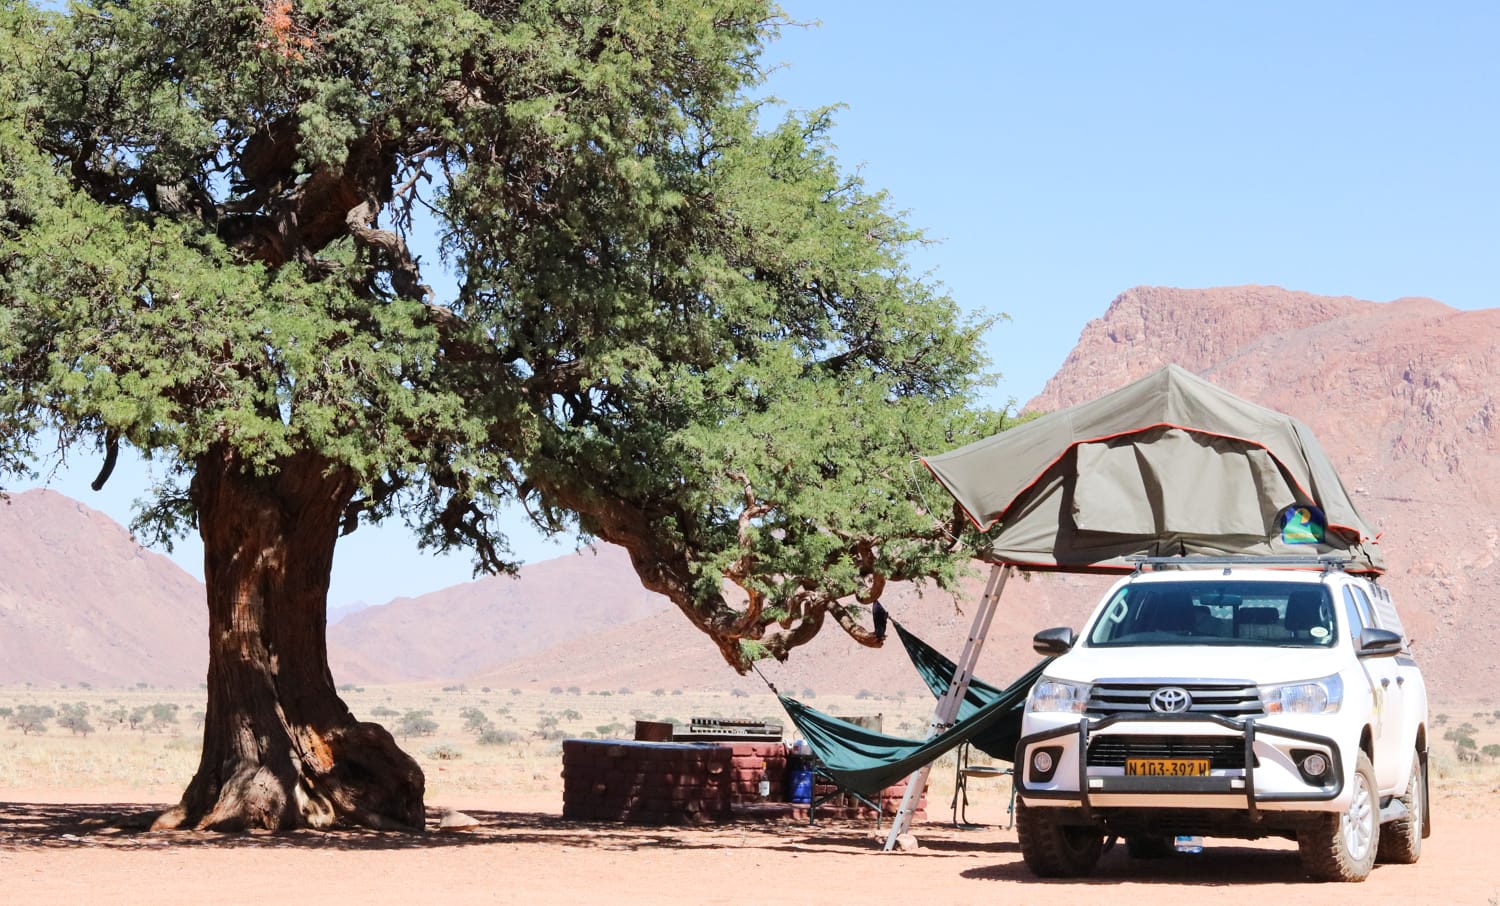 Namibia Reisevorbereitung für Selbstfahrer: Campsite & Camping Ausrüstung